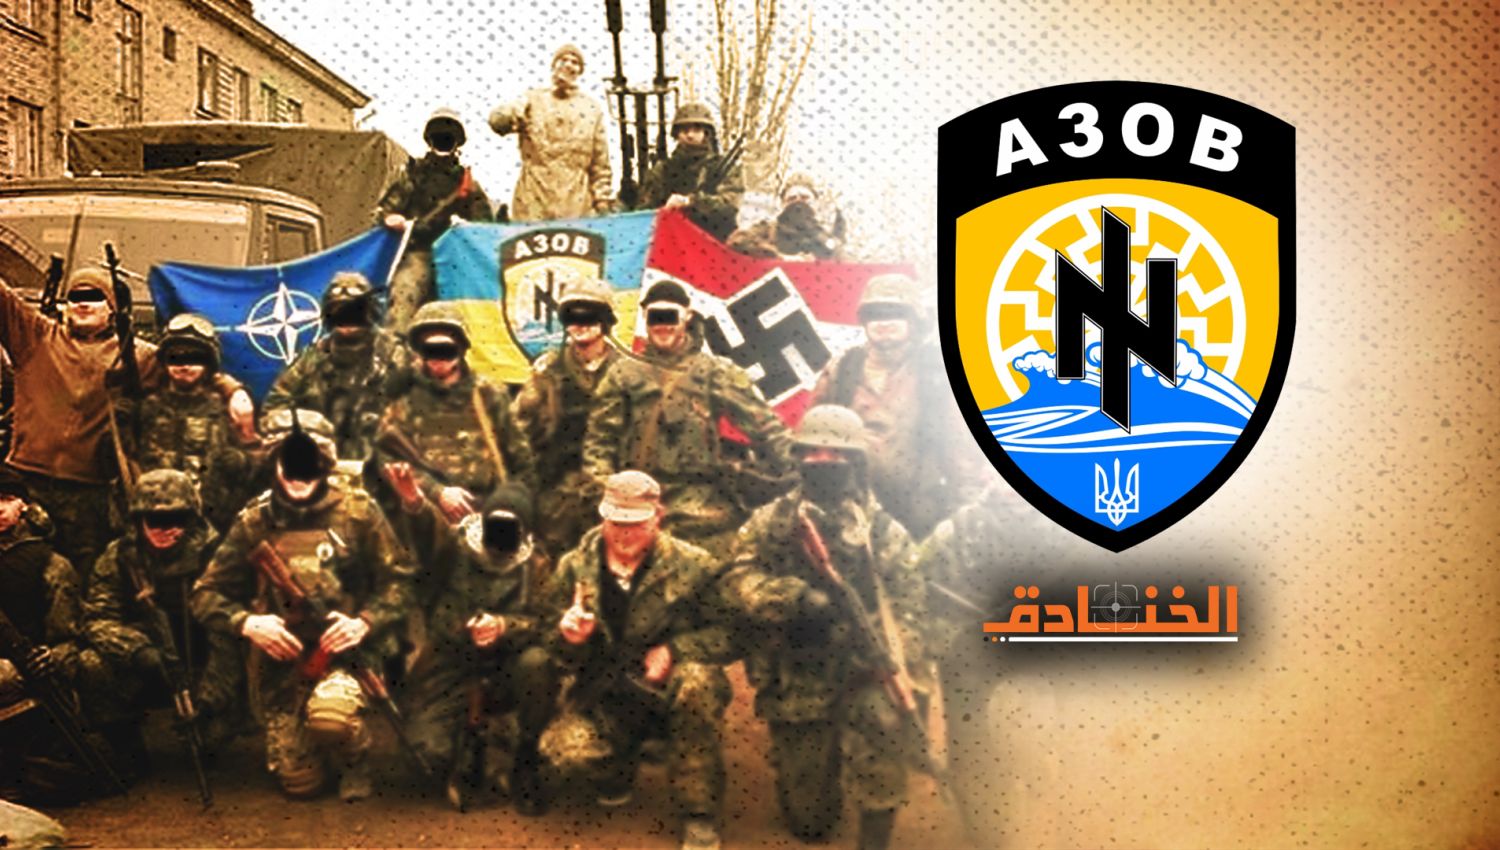 وحدة "آزوف" في الجيش الأوكراني: النسخة الأوروبية لـ "داعش"!